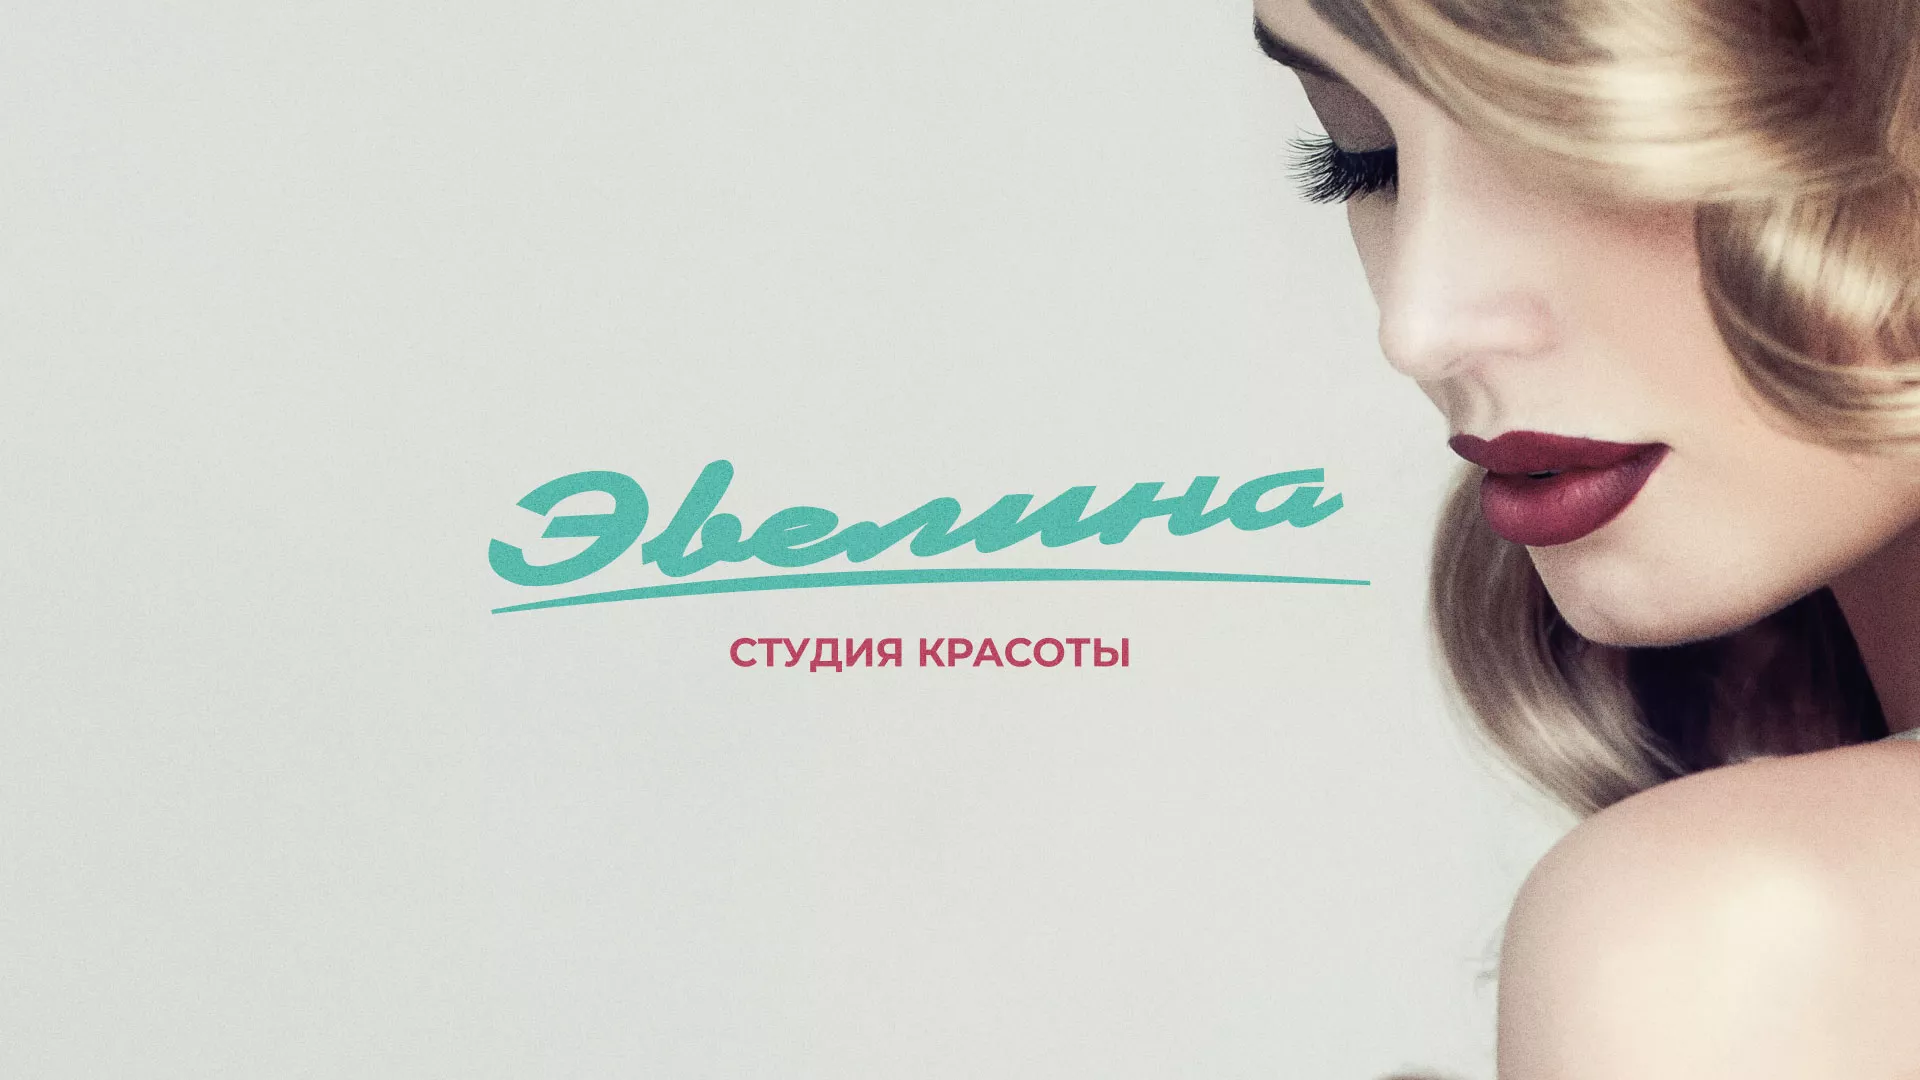 Разработка сайта для салона красоты «Эвелина» в Иваново